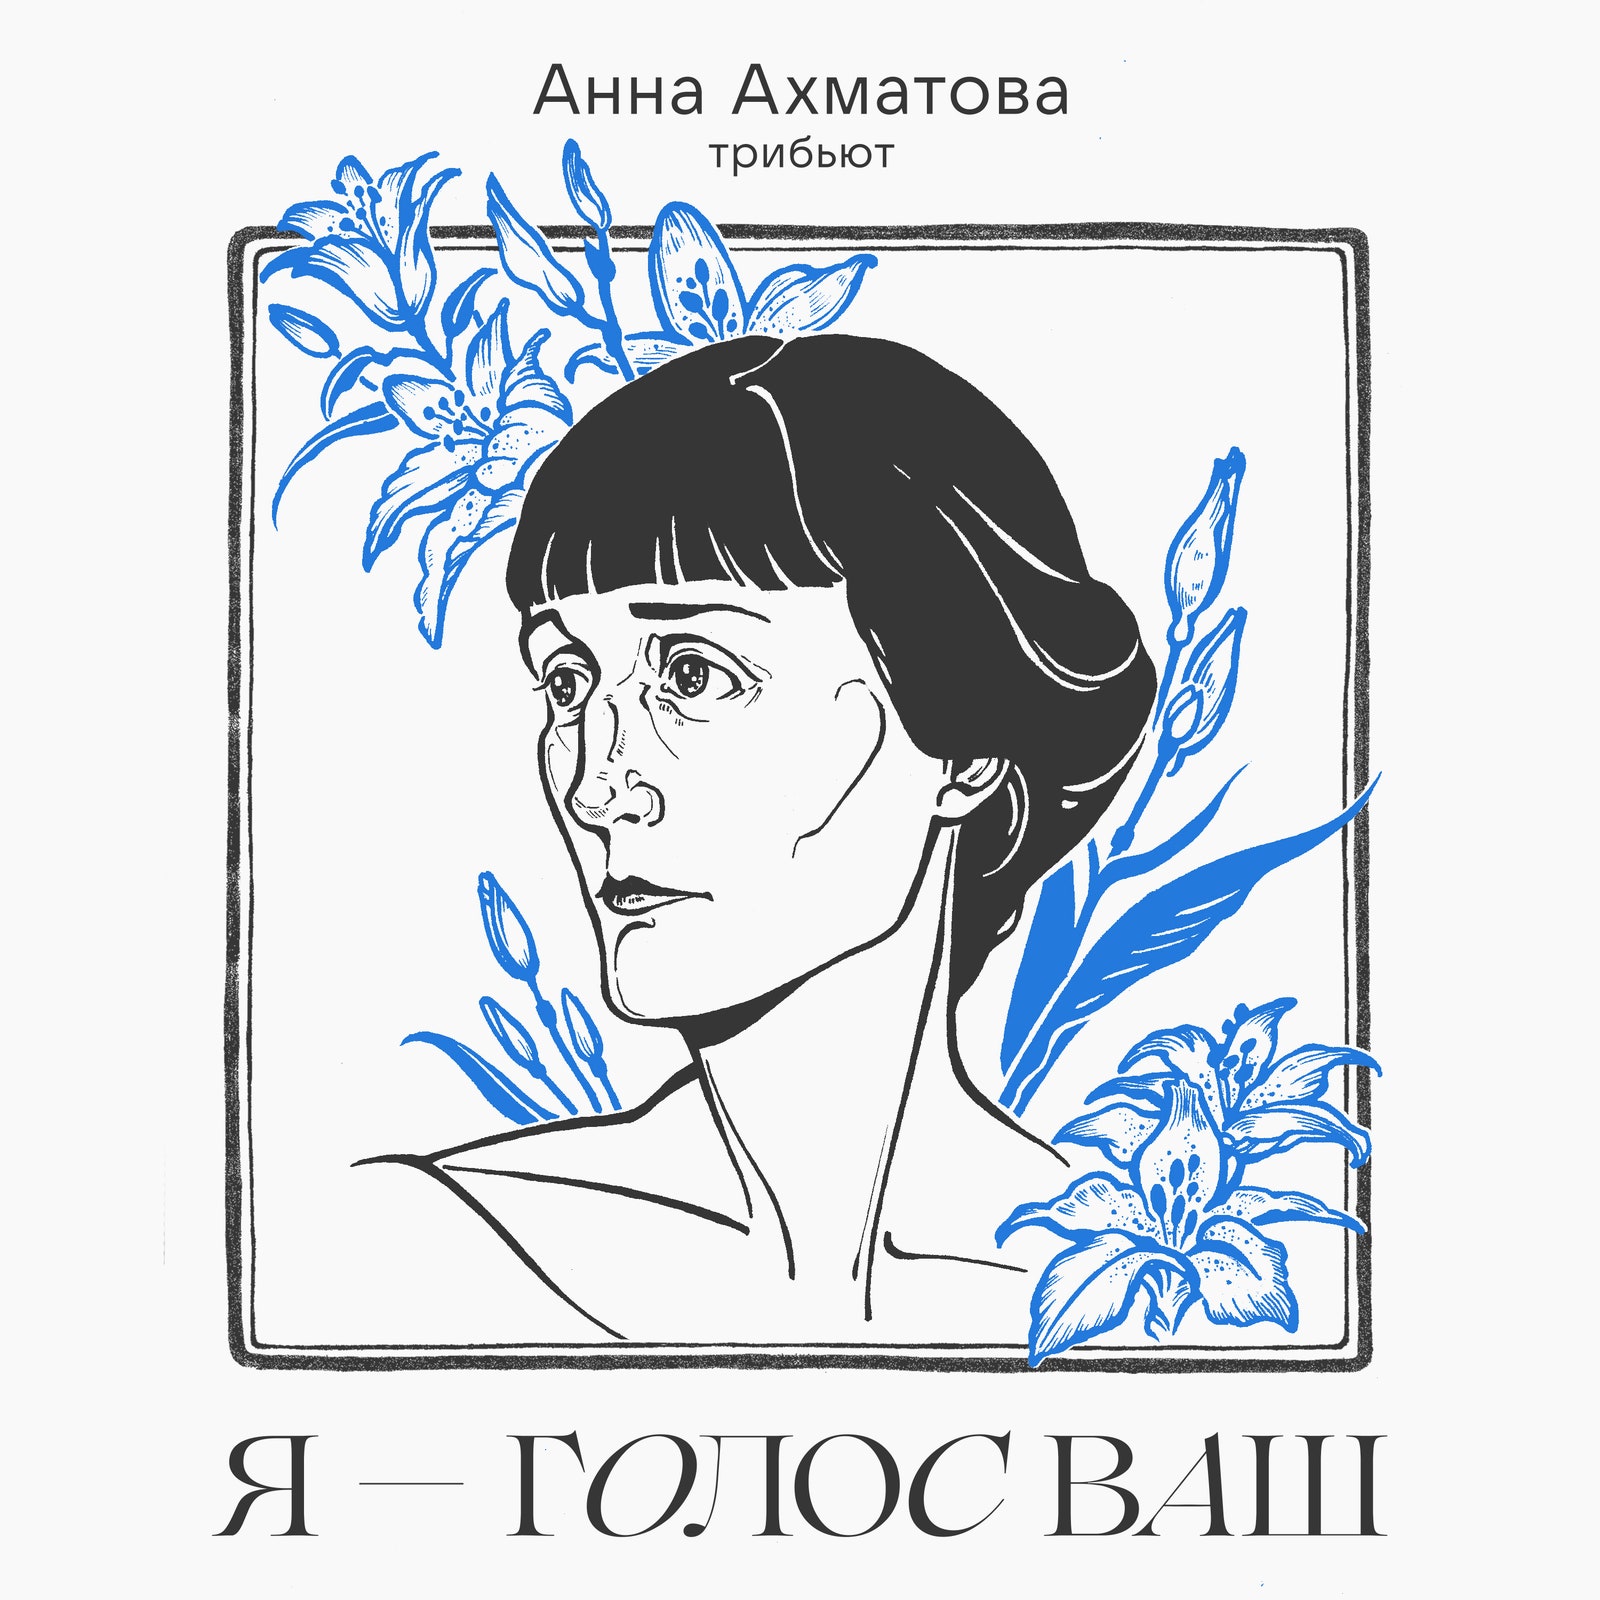 «Я — голос ваш» «ВКонтакте» представляет трибьютальбом ко дню памяти Анны Ахматовой